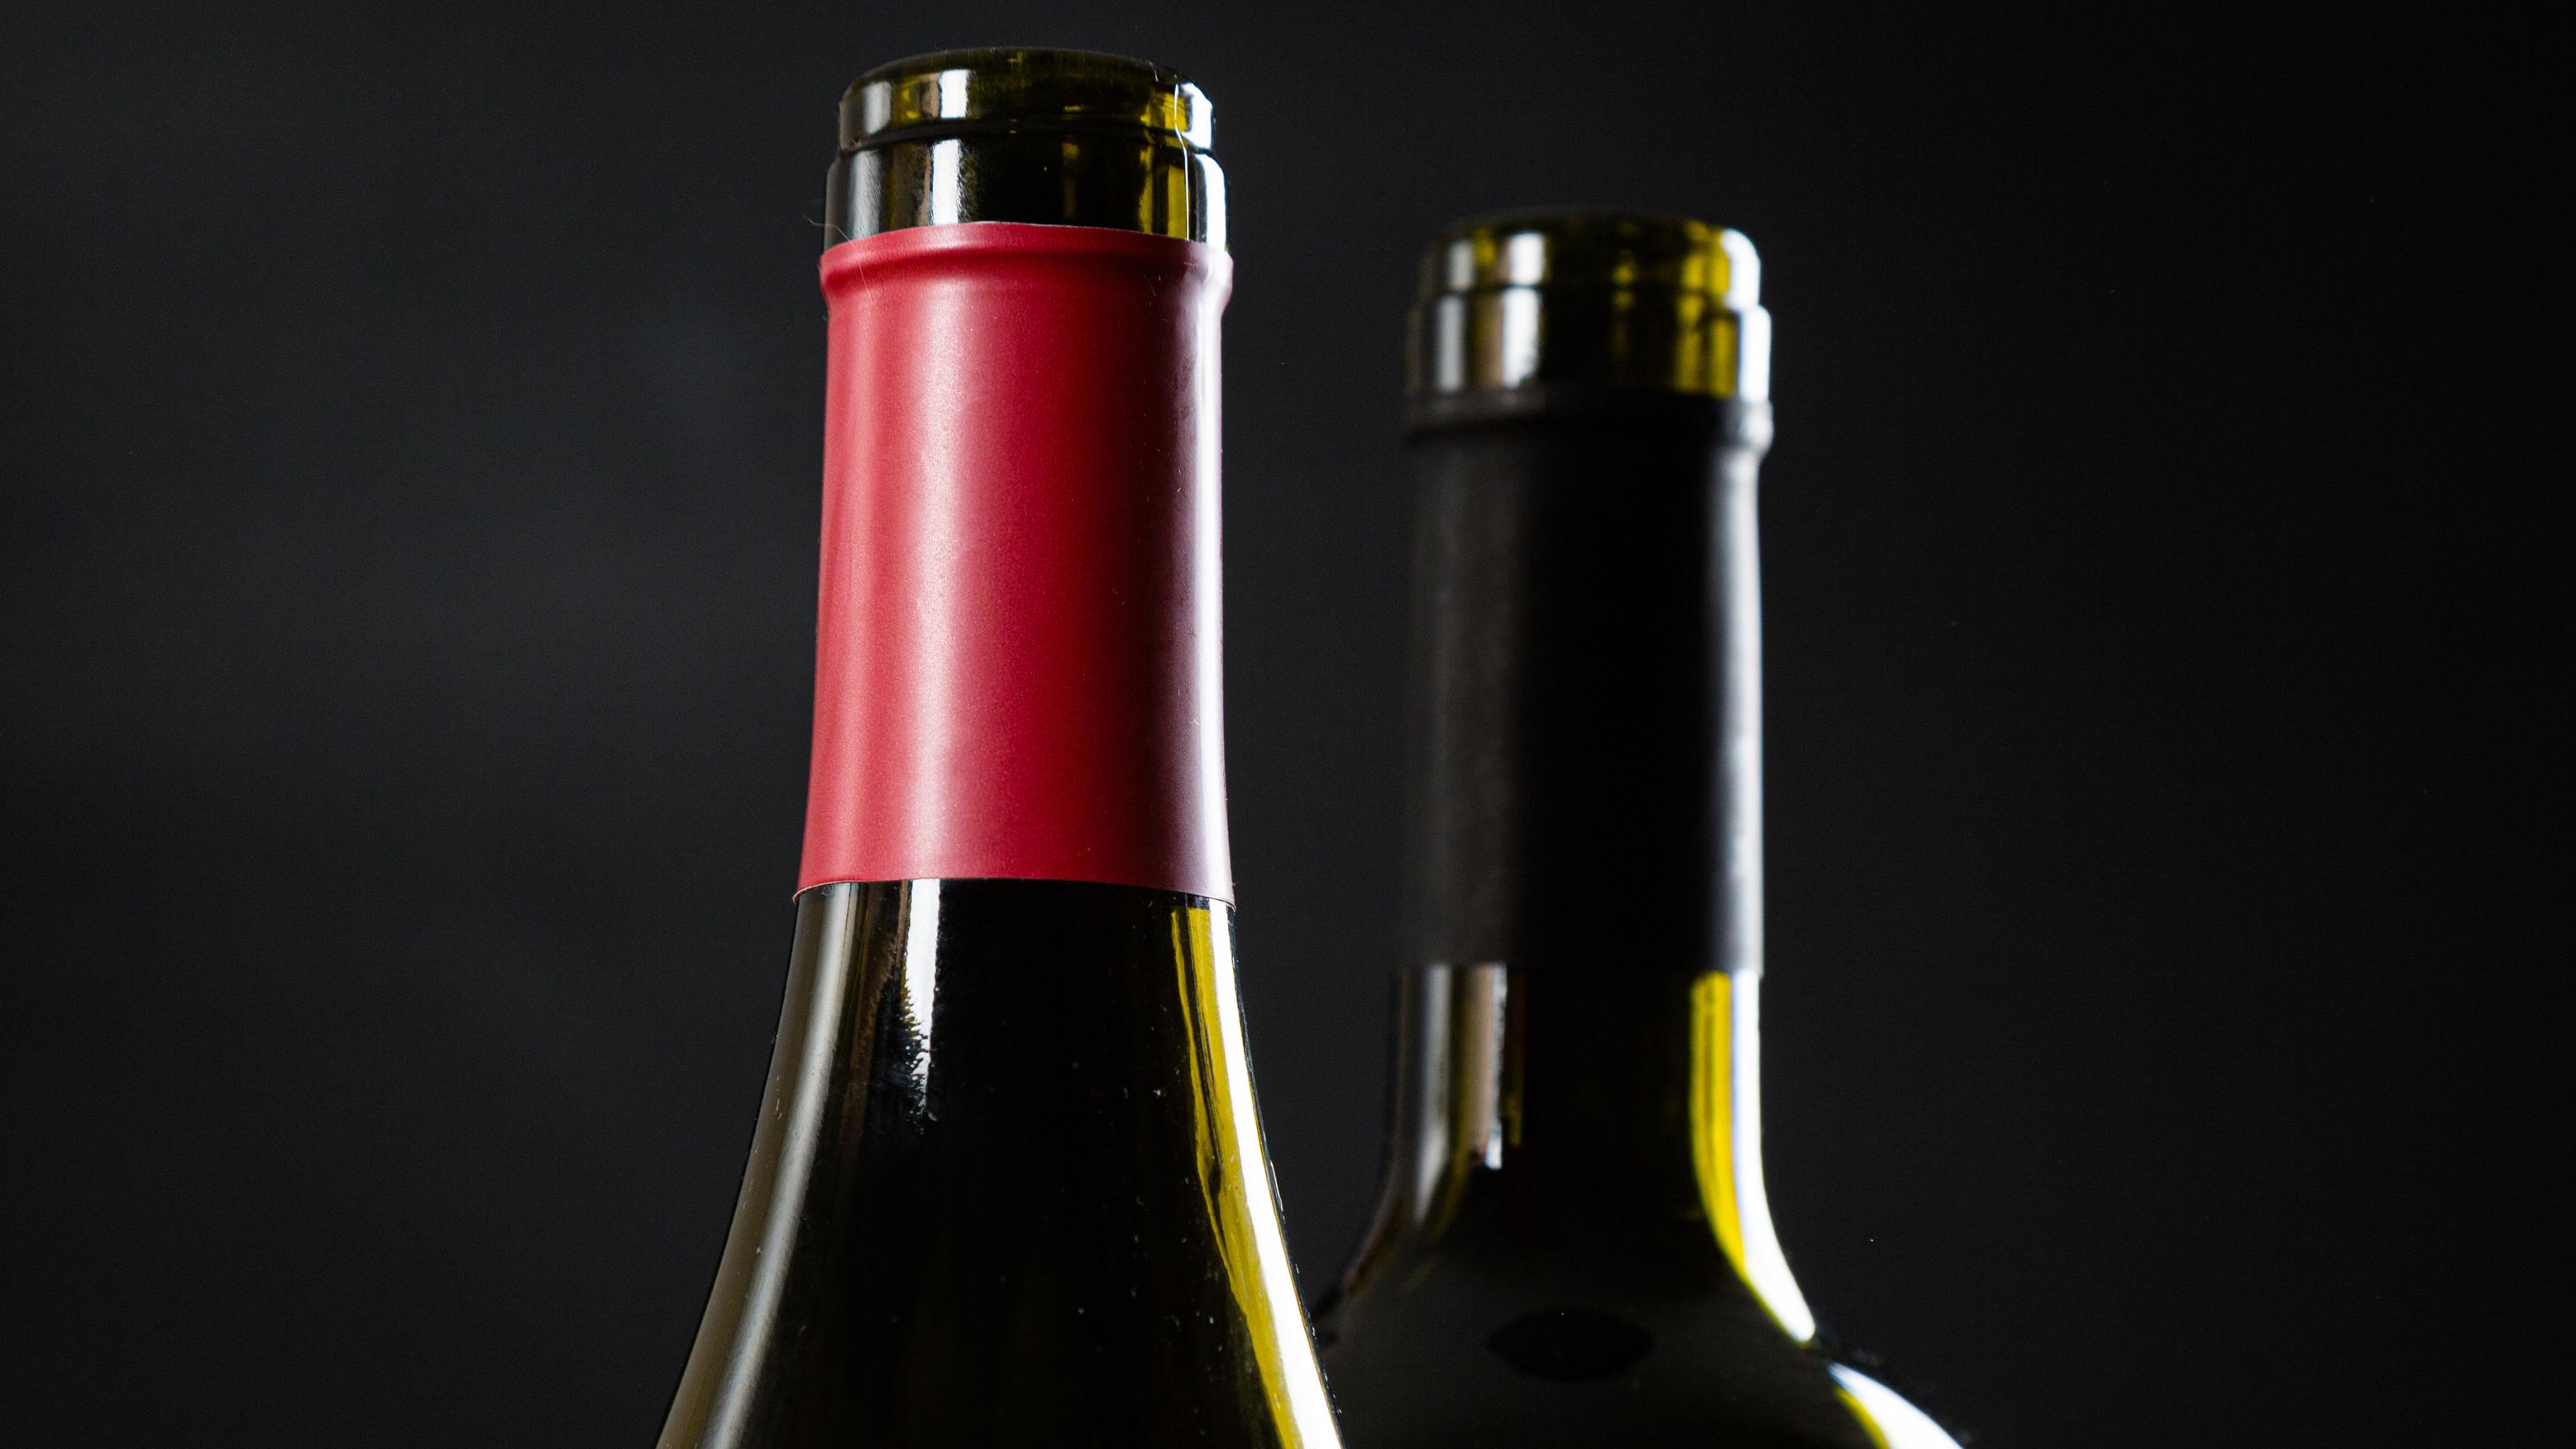 Comment conserver un vin après ouverture ? 